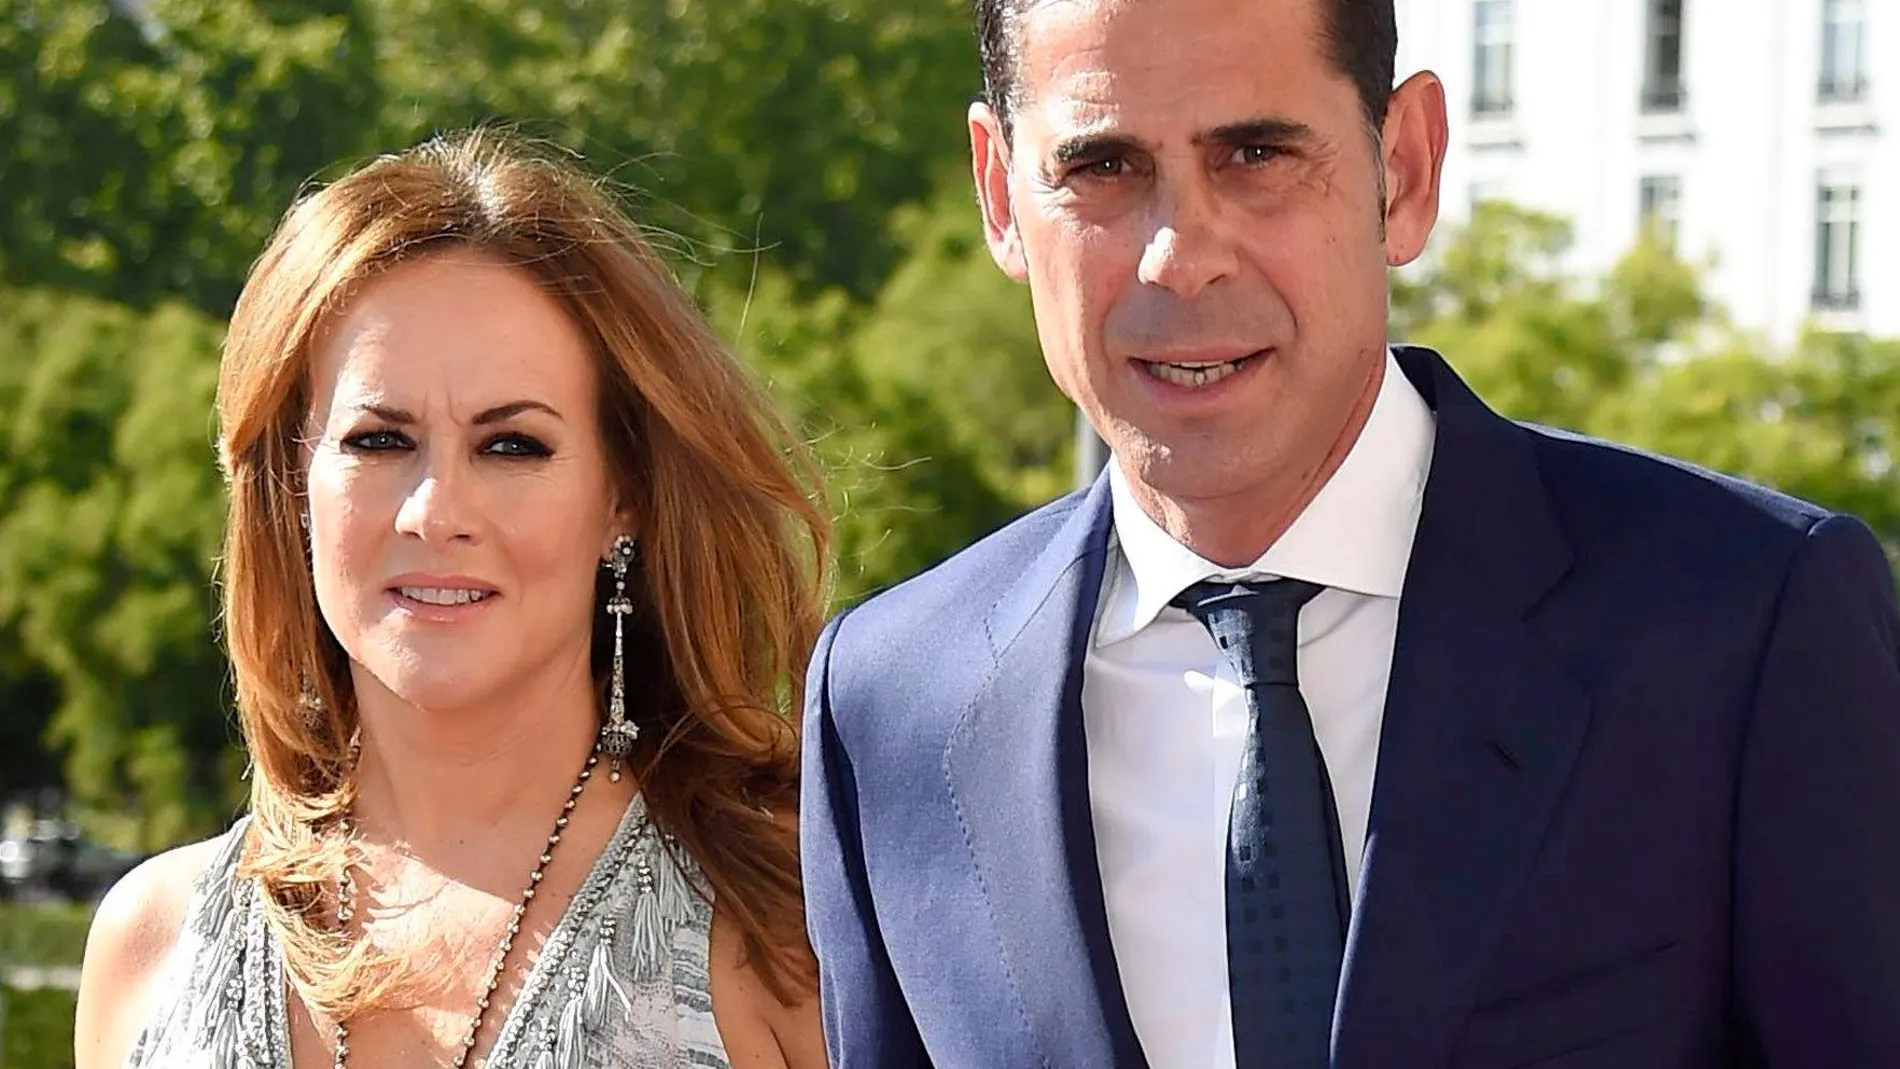 El polígrafo: ¿Son ciertos los rumores de divorcio de Fernando Hierro y su mujer?